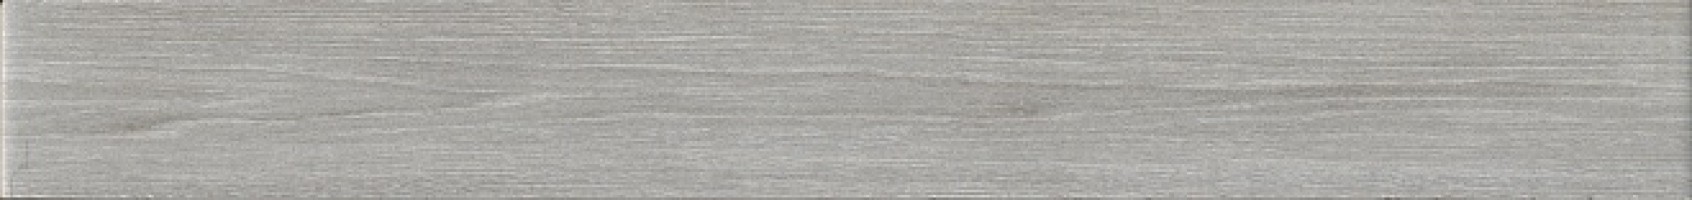 Бордюр Kerama Marazzi Кассетоне серый светлый матовый 30.2x3.5 VT/A367/SG9174